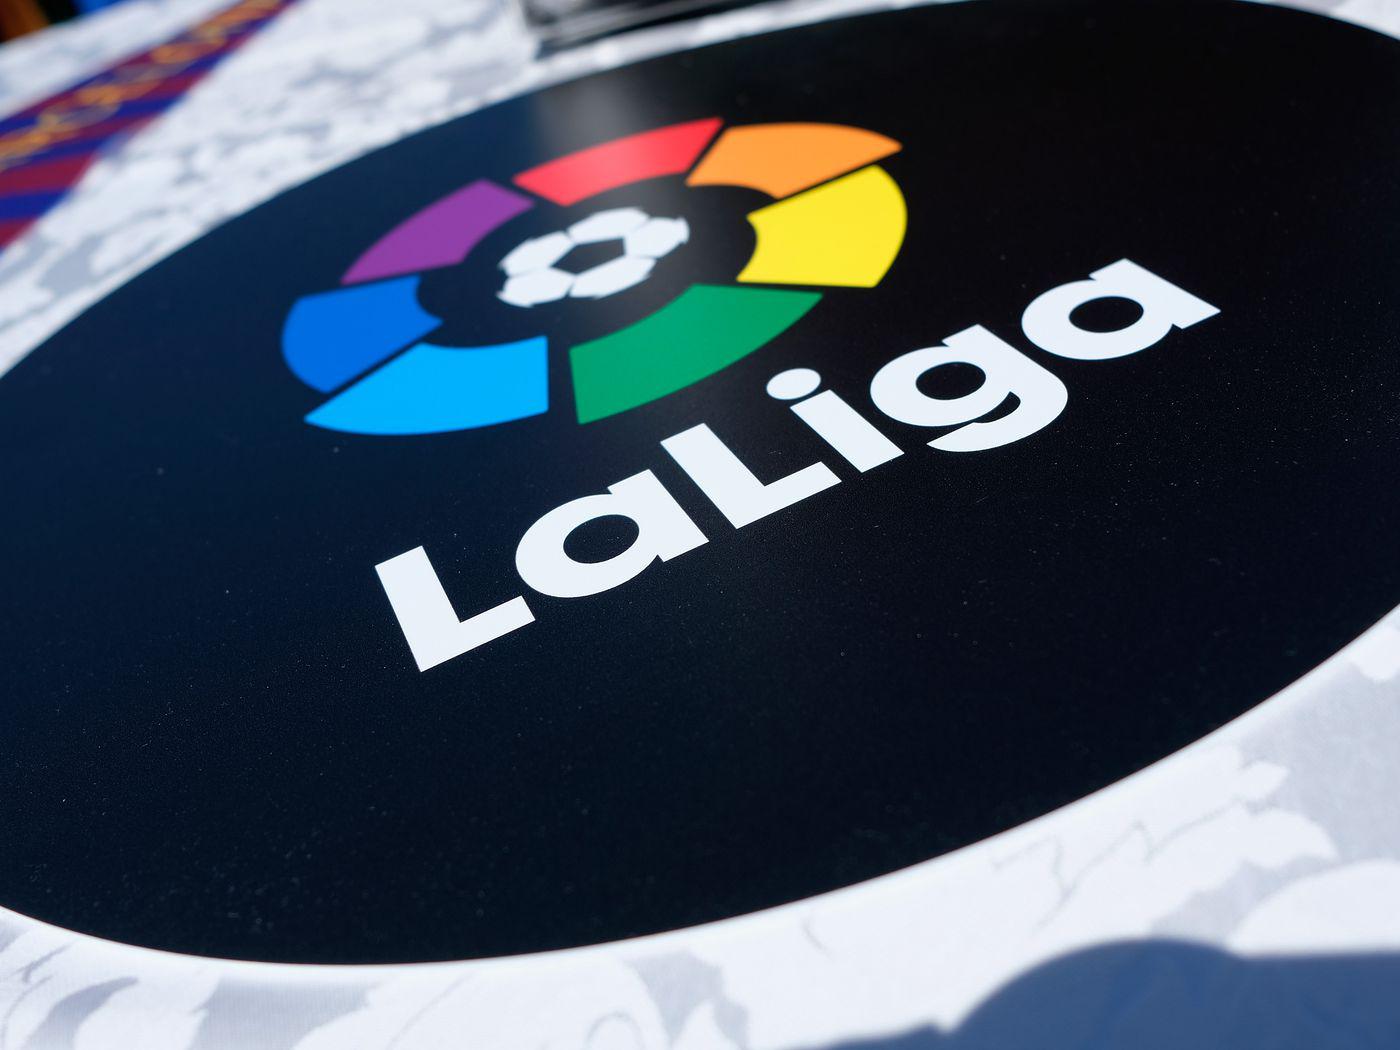 若西甲就此结束, 最终成绩将由足协与Laliga共同决定(1)